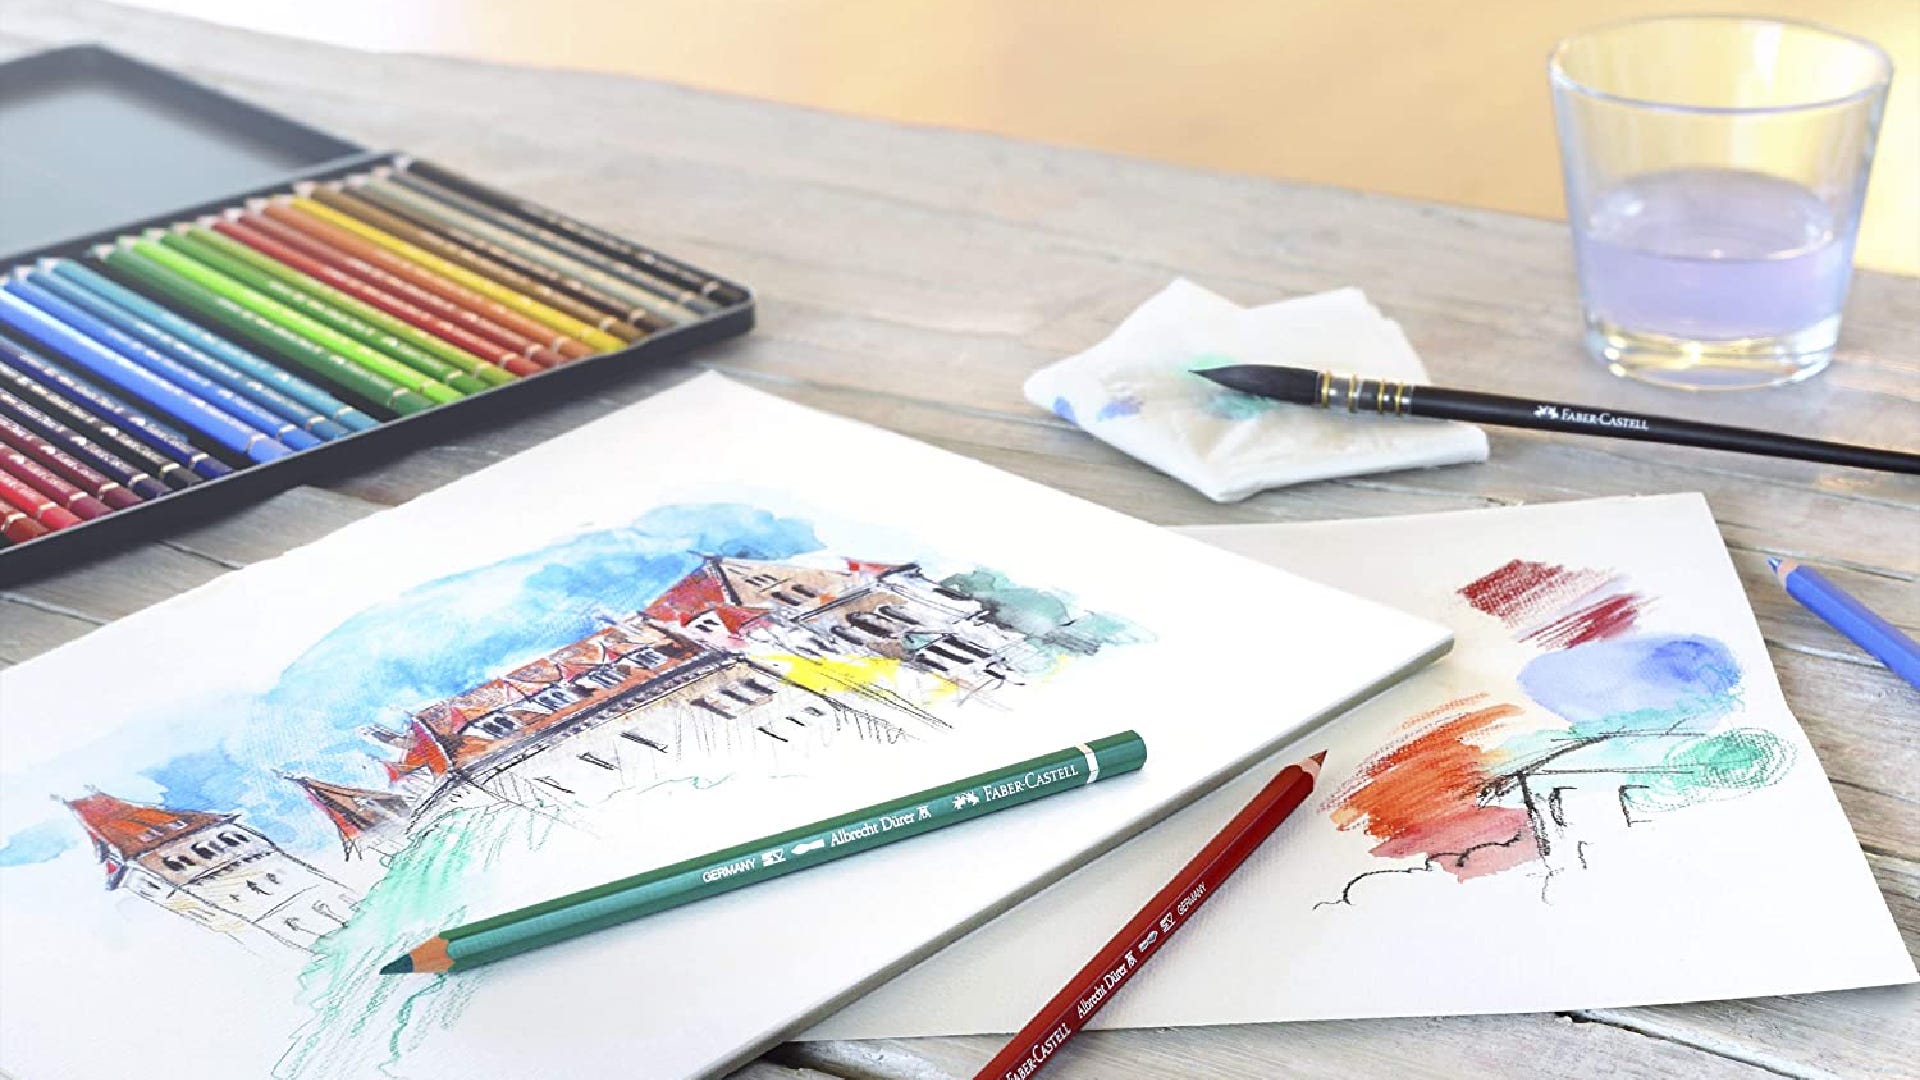 Les meilleurs crayons aquarelle pour le dessin et la peinture